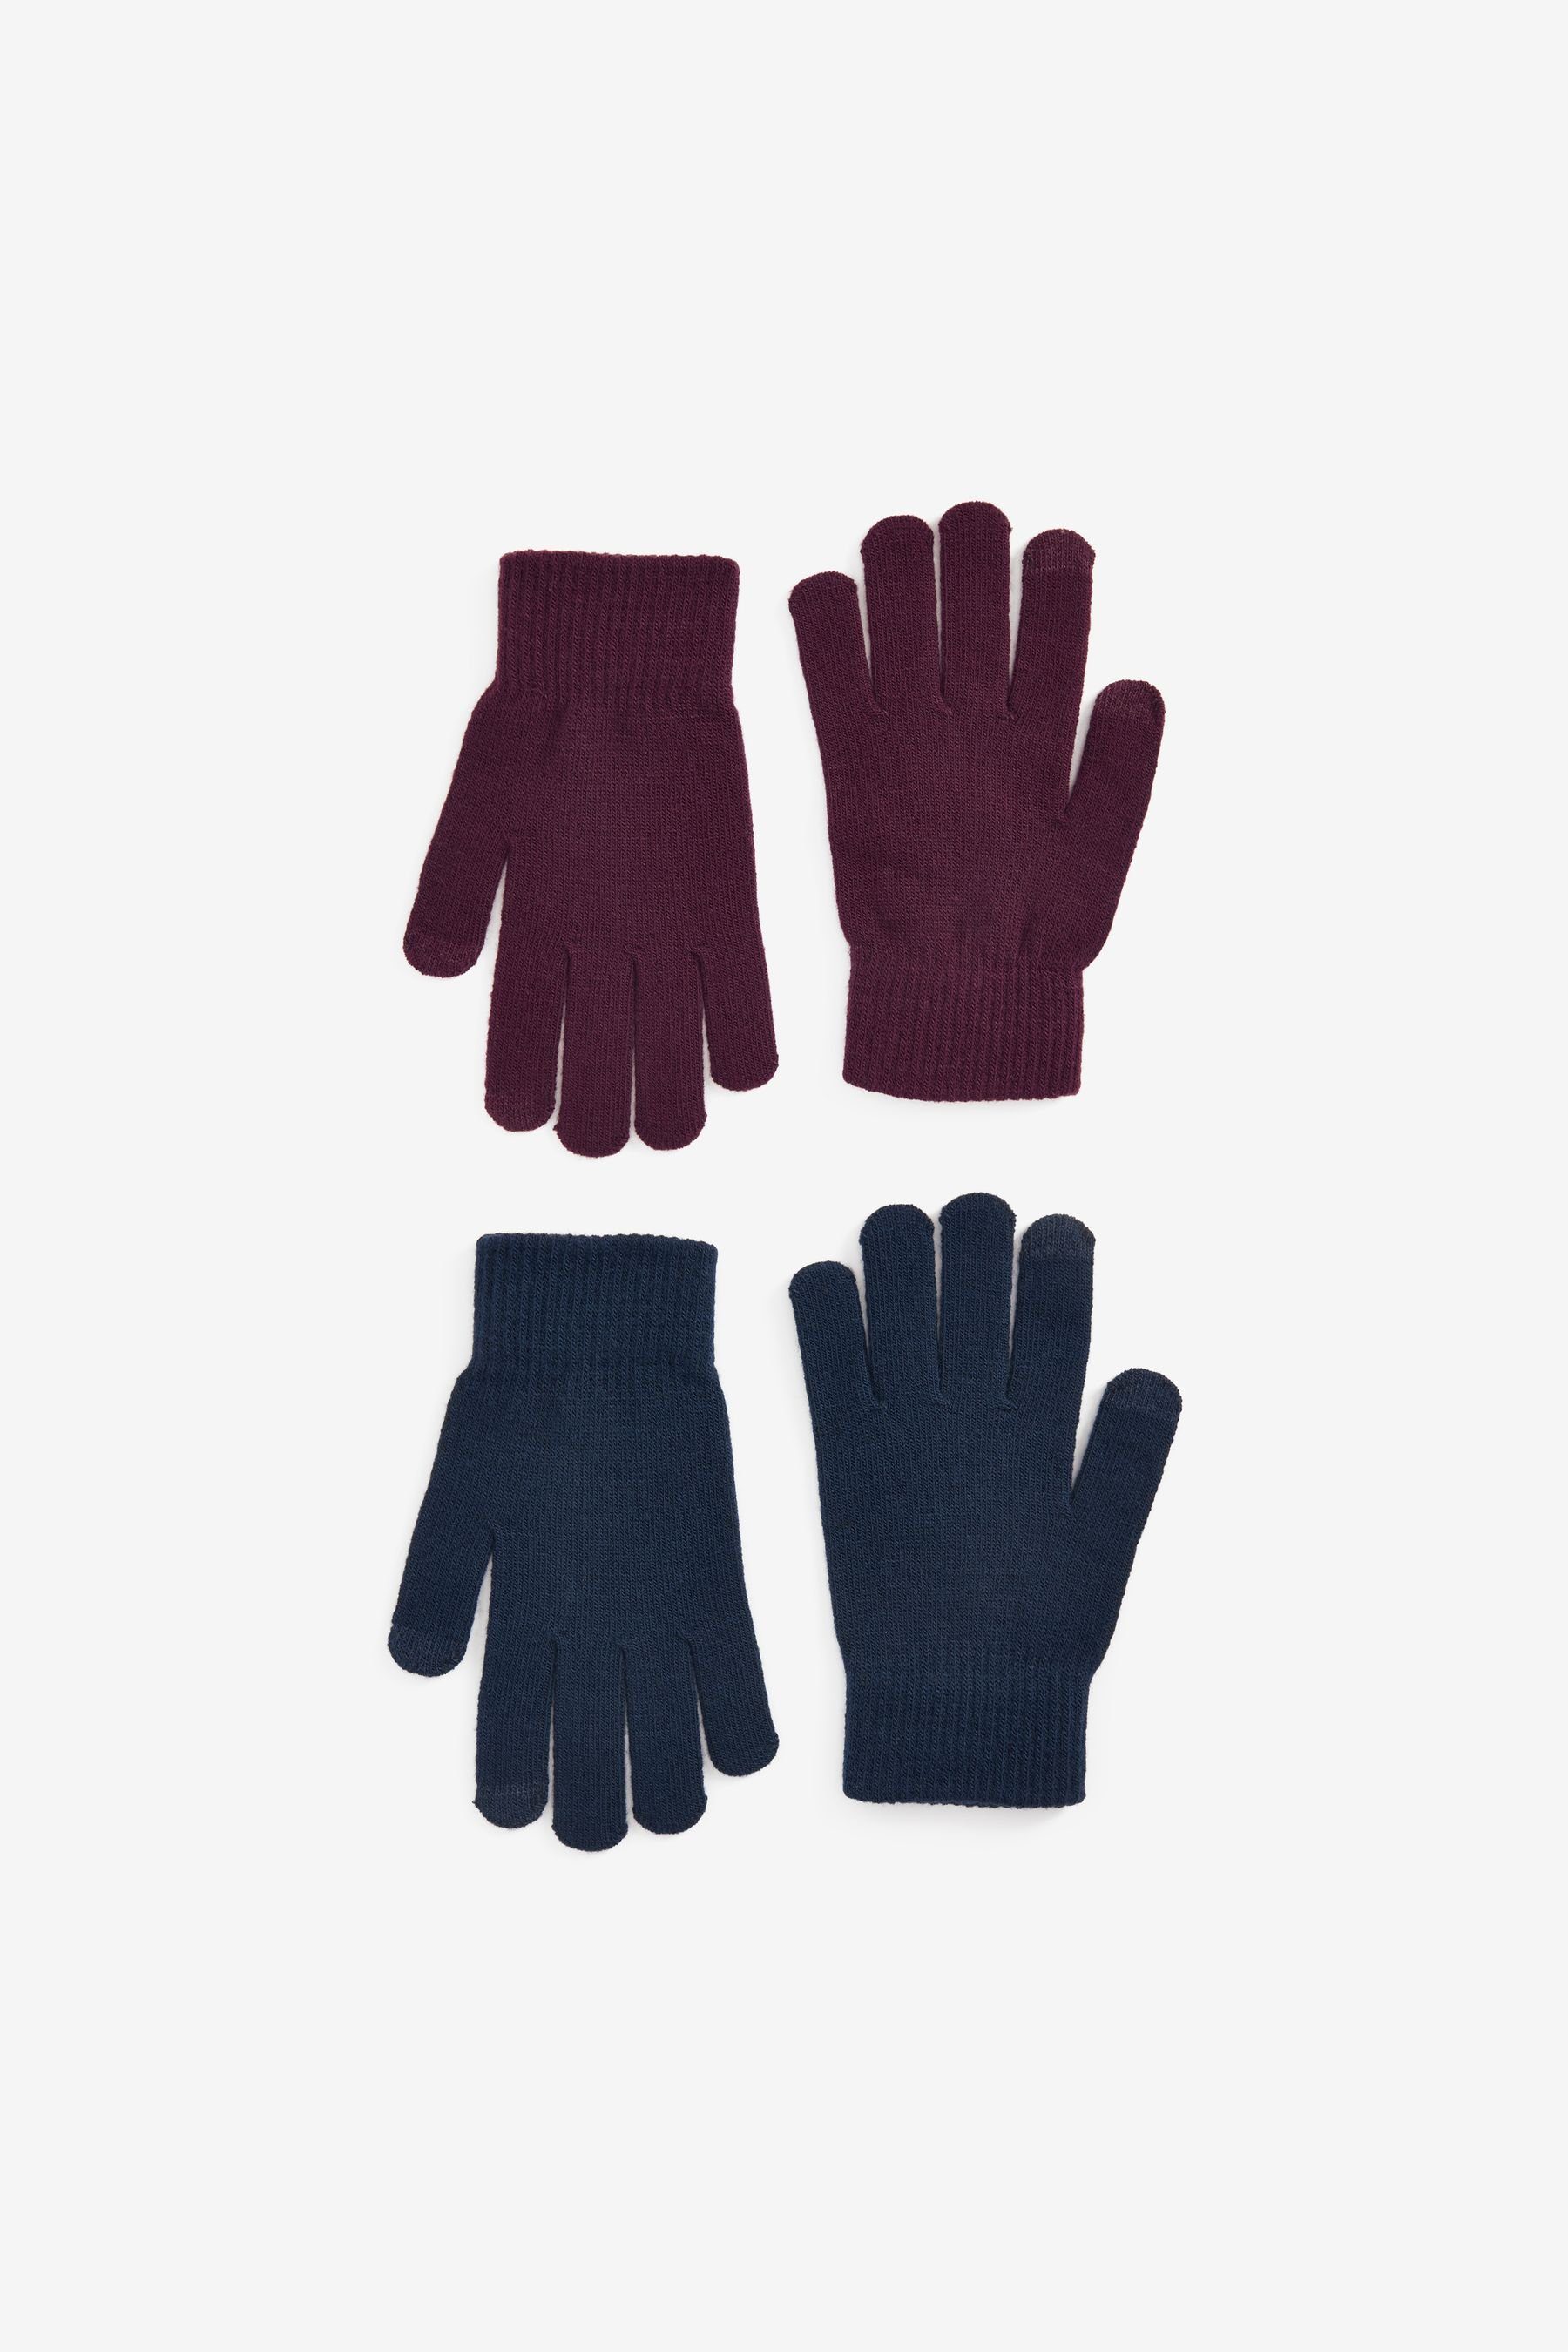 Next Strickhandschuhe Magic Touchscreen-Handschuhe, 2er-Pack Navy/Red